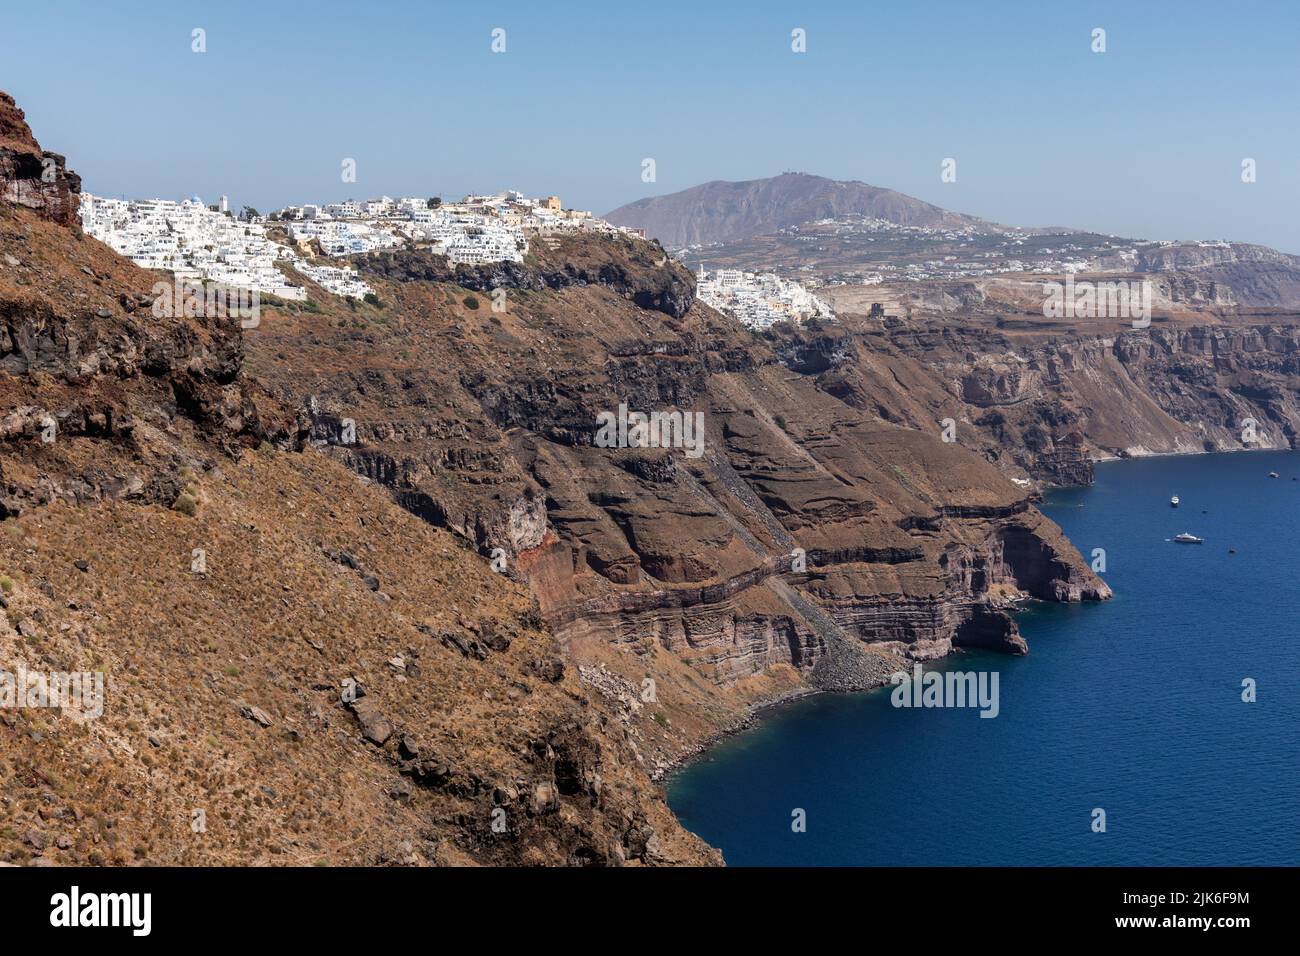 Vista dalla roccia di Skaros del paesaggio vulcanico della caldera, la città di Fira e il Mar Egeo, Imerovigli, Santorini, Grecia, Europa Foto Stock